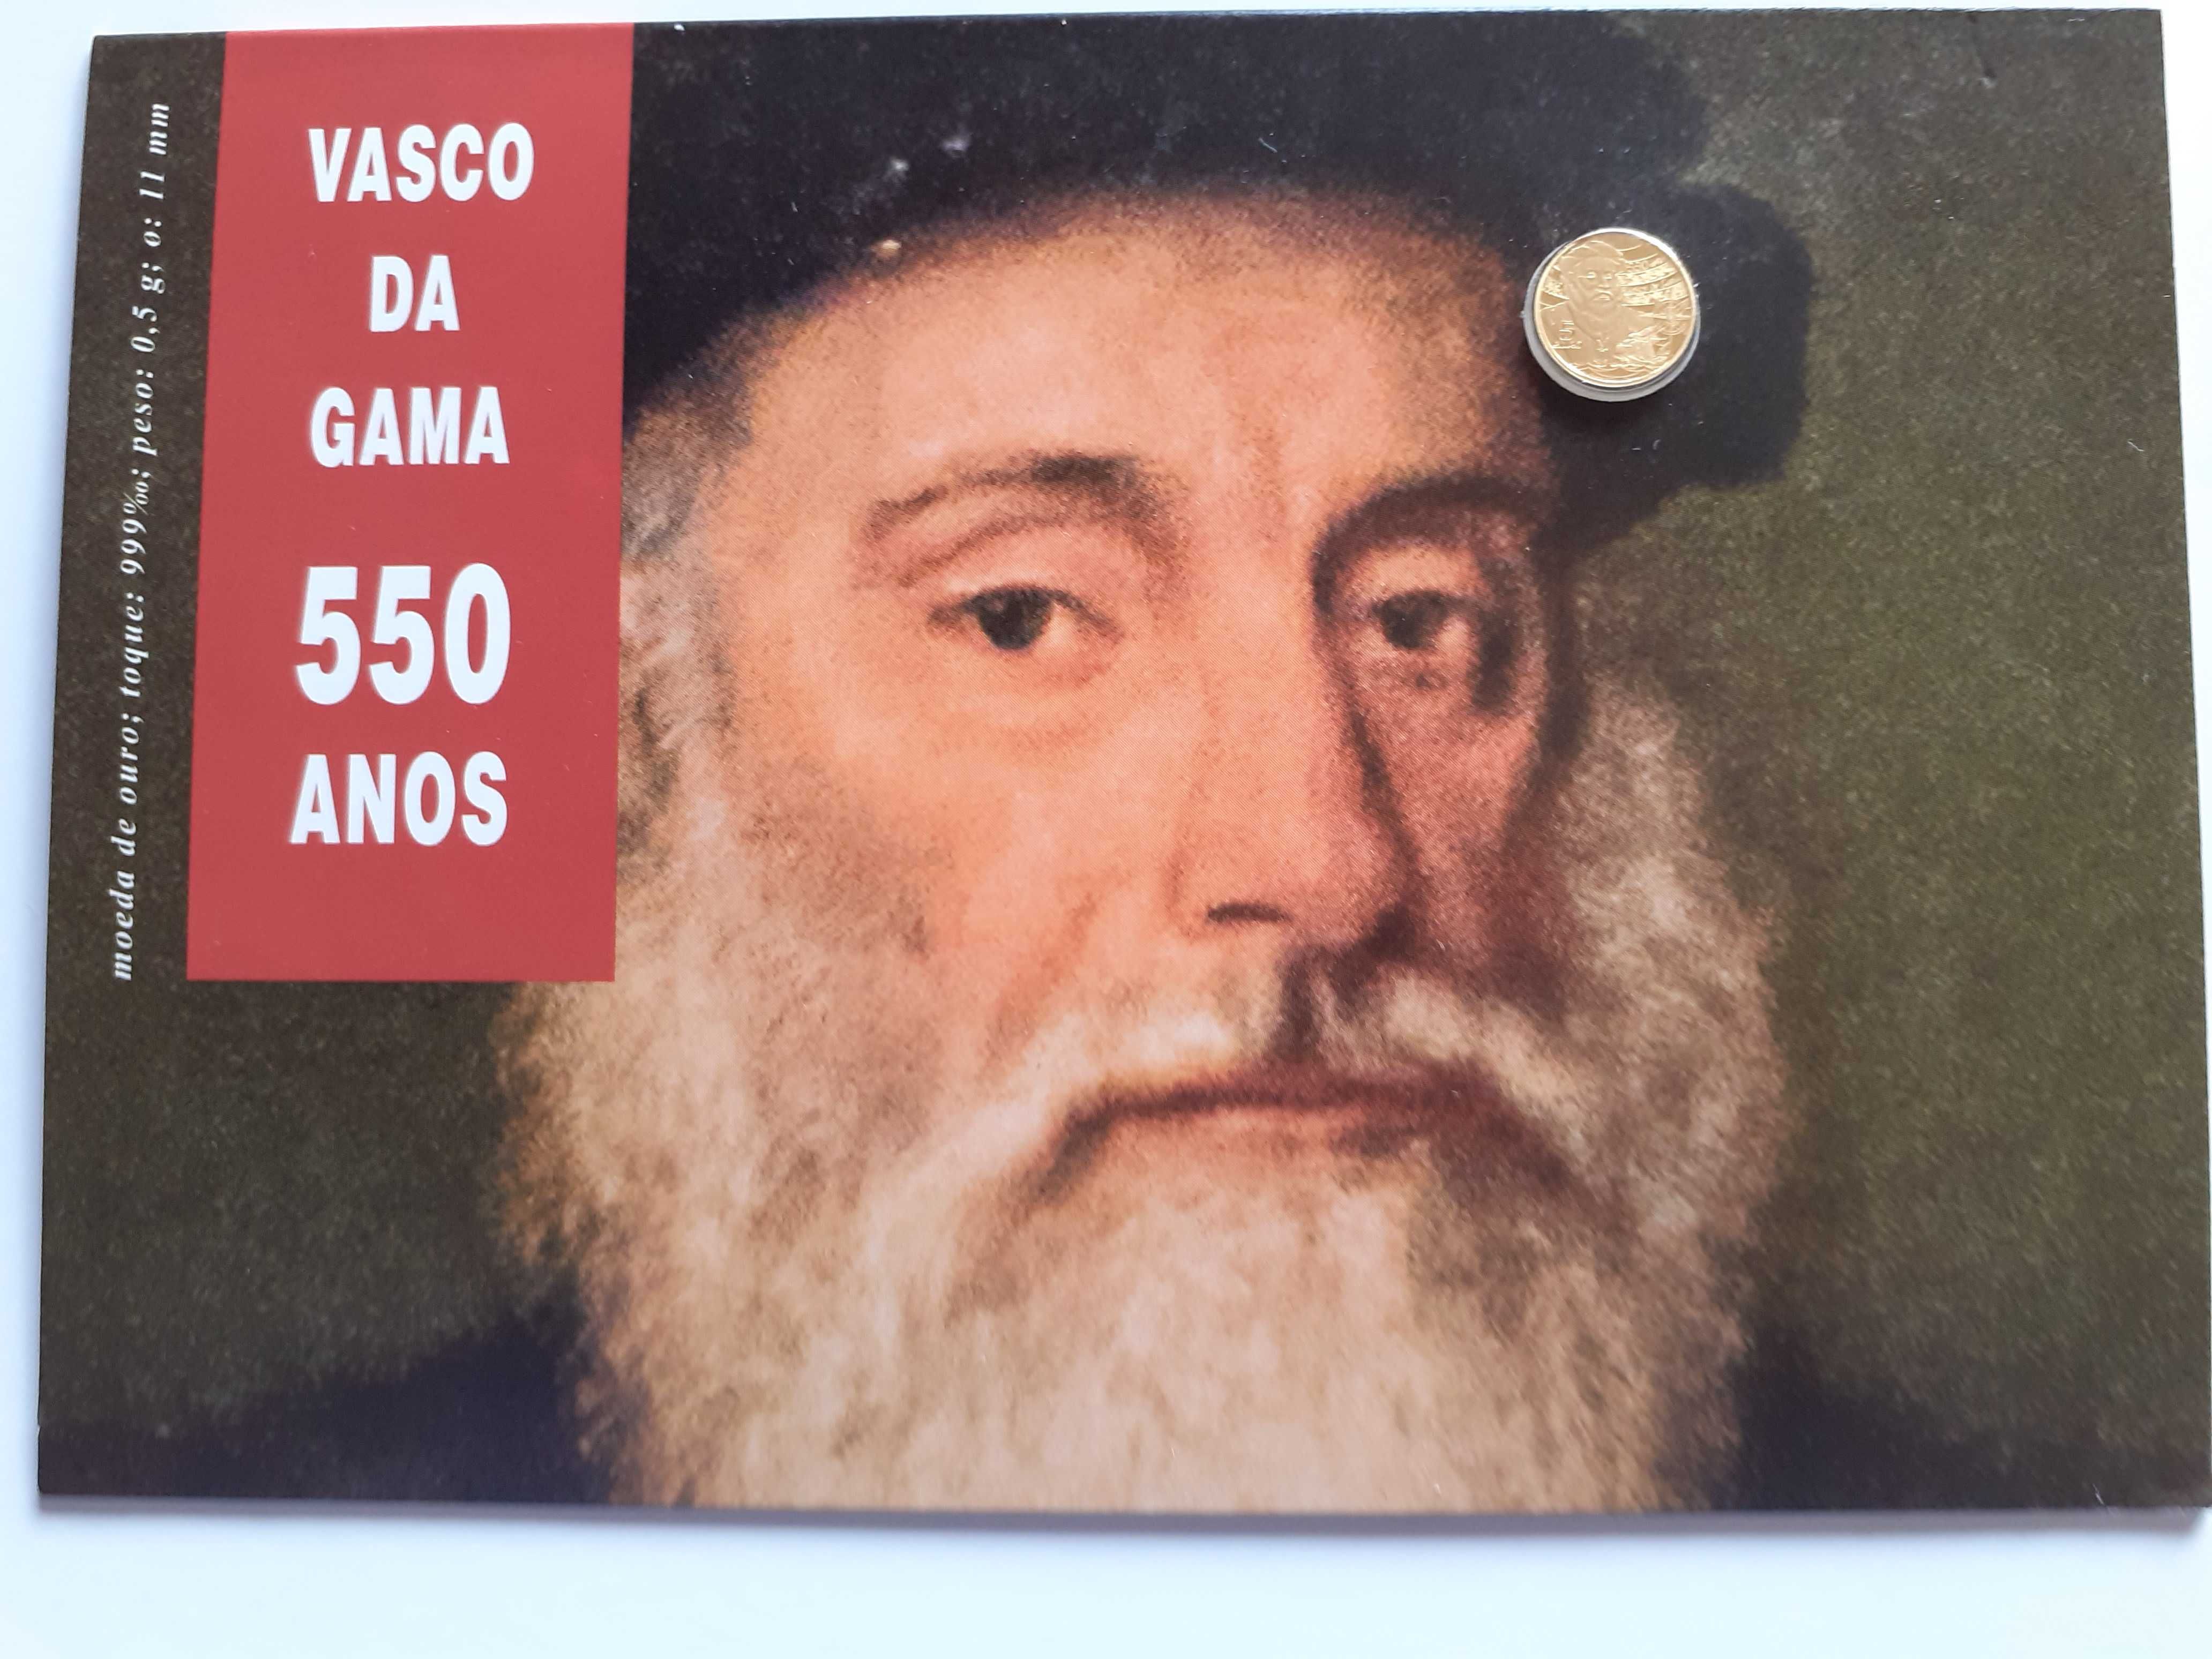 Moeda em ouro, comemorativa dos 550 anos de Vasco da Gama.